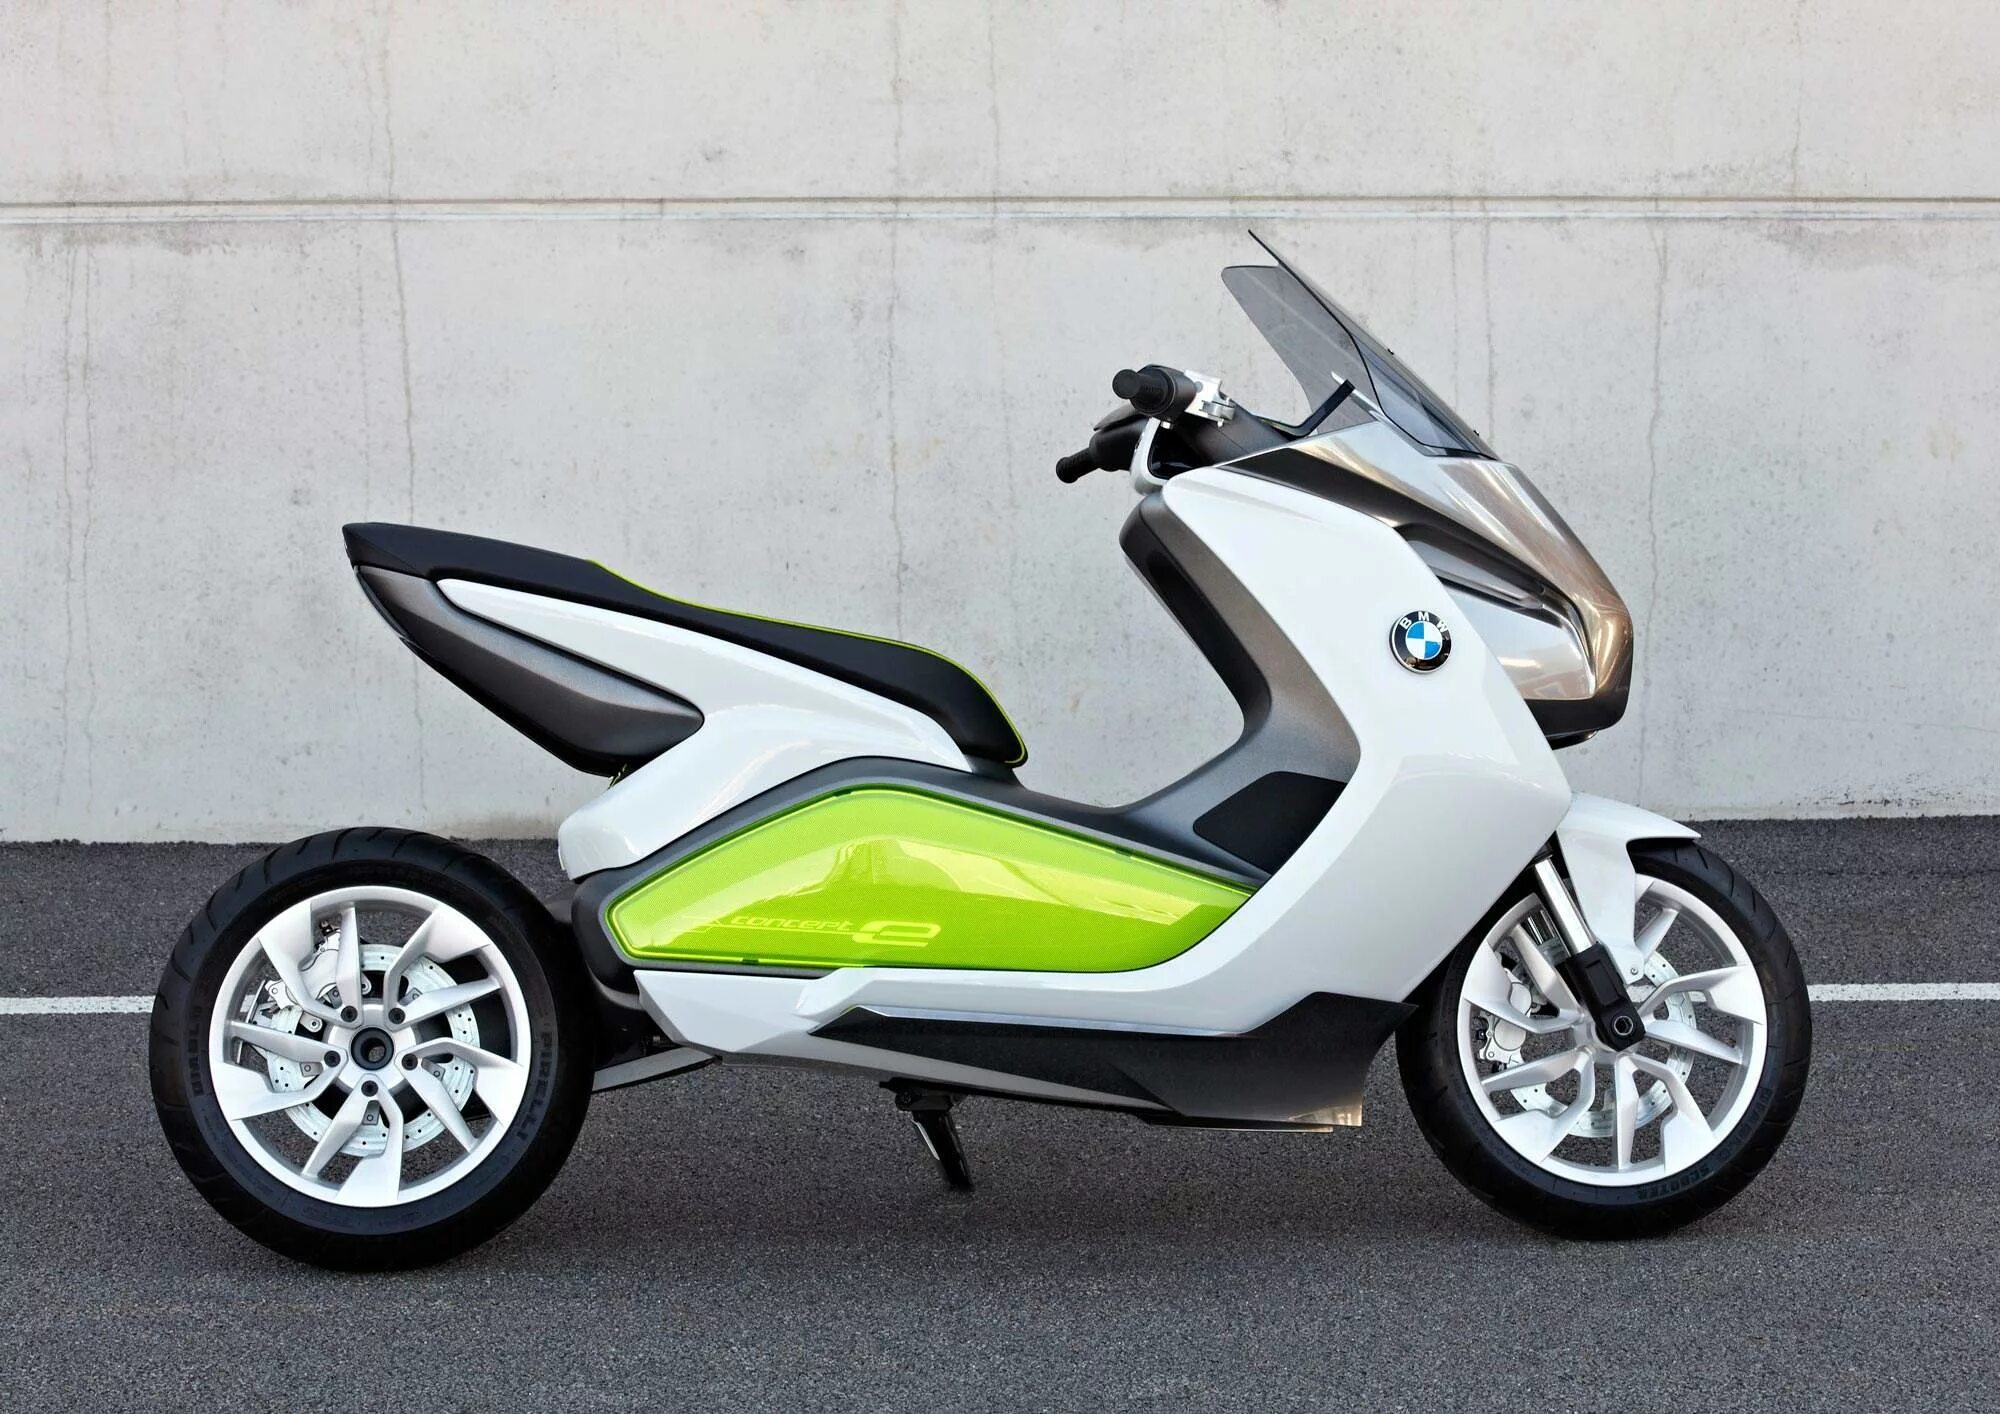 Скутер BMW 50cc. BMW Motorrad скутер. Скутер BMW 50cc утка. BMW Electric Scooter. Скутер транспортное